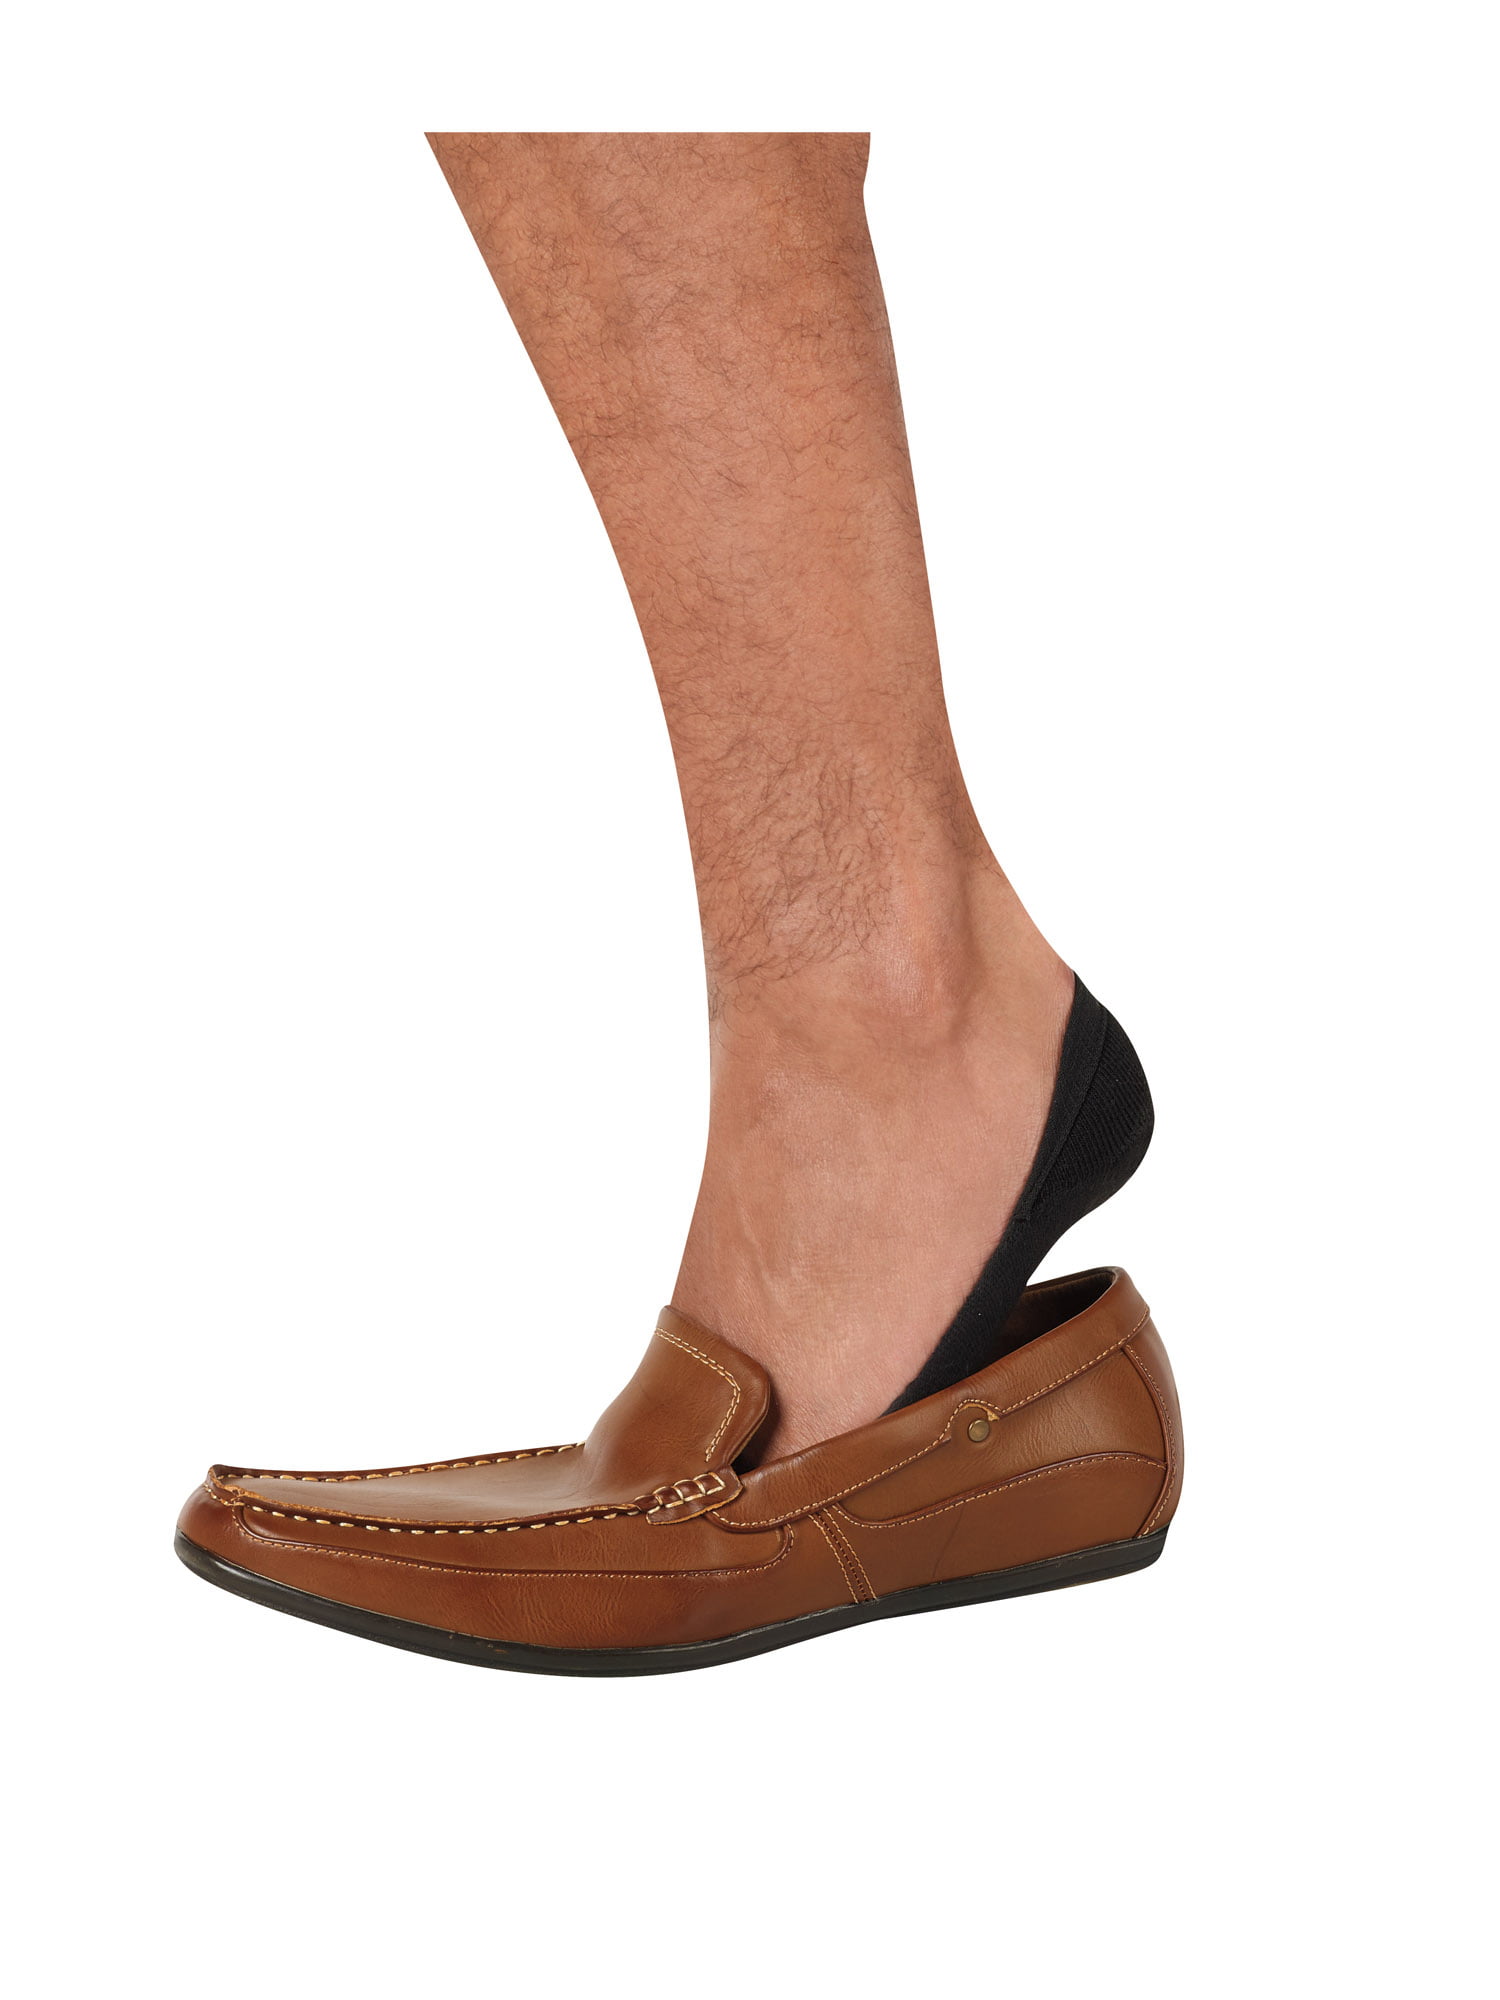 shoe liner socks mens